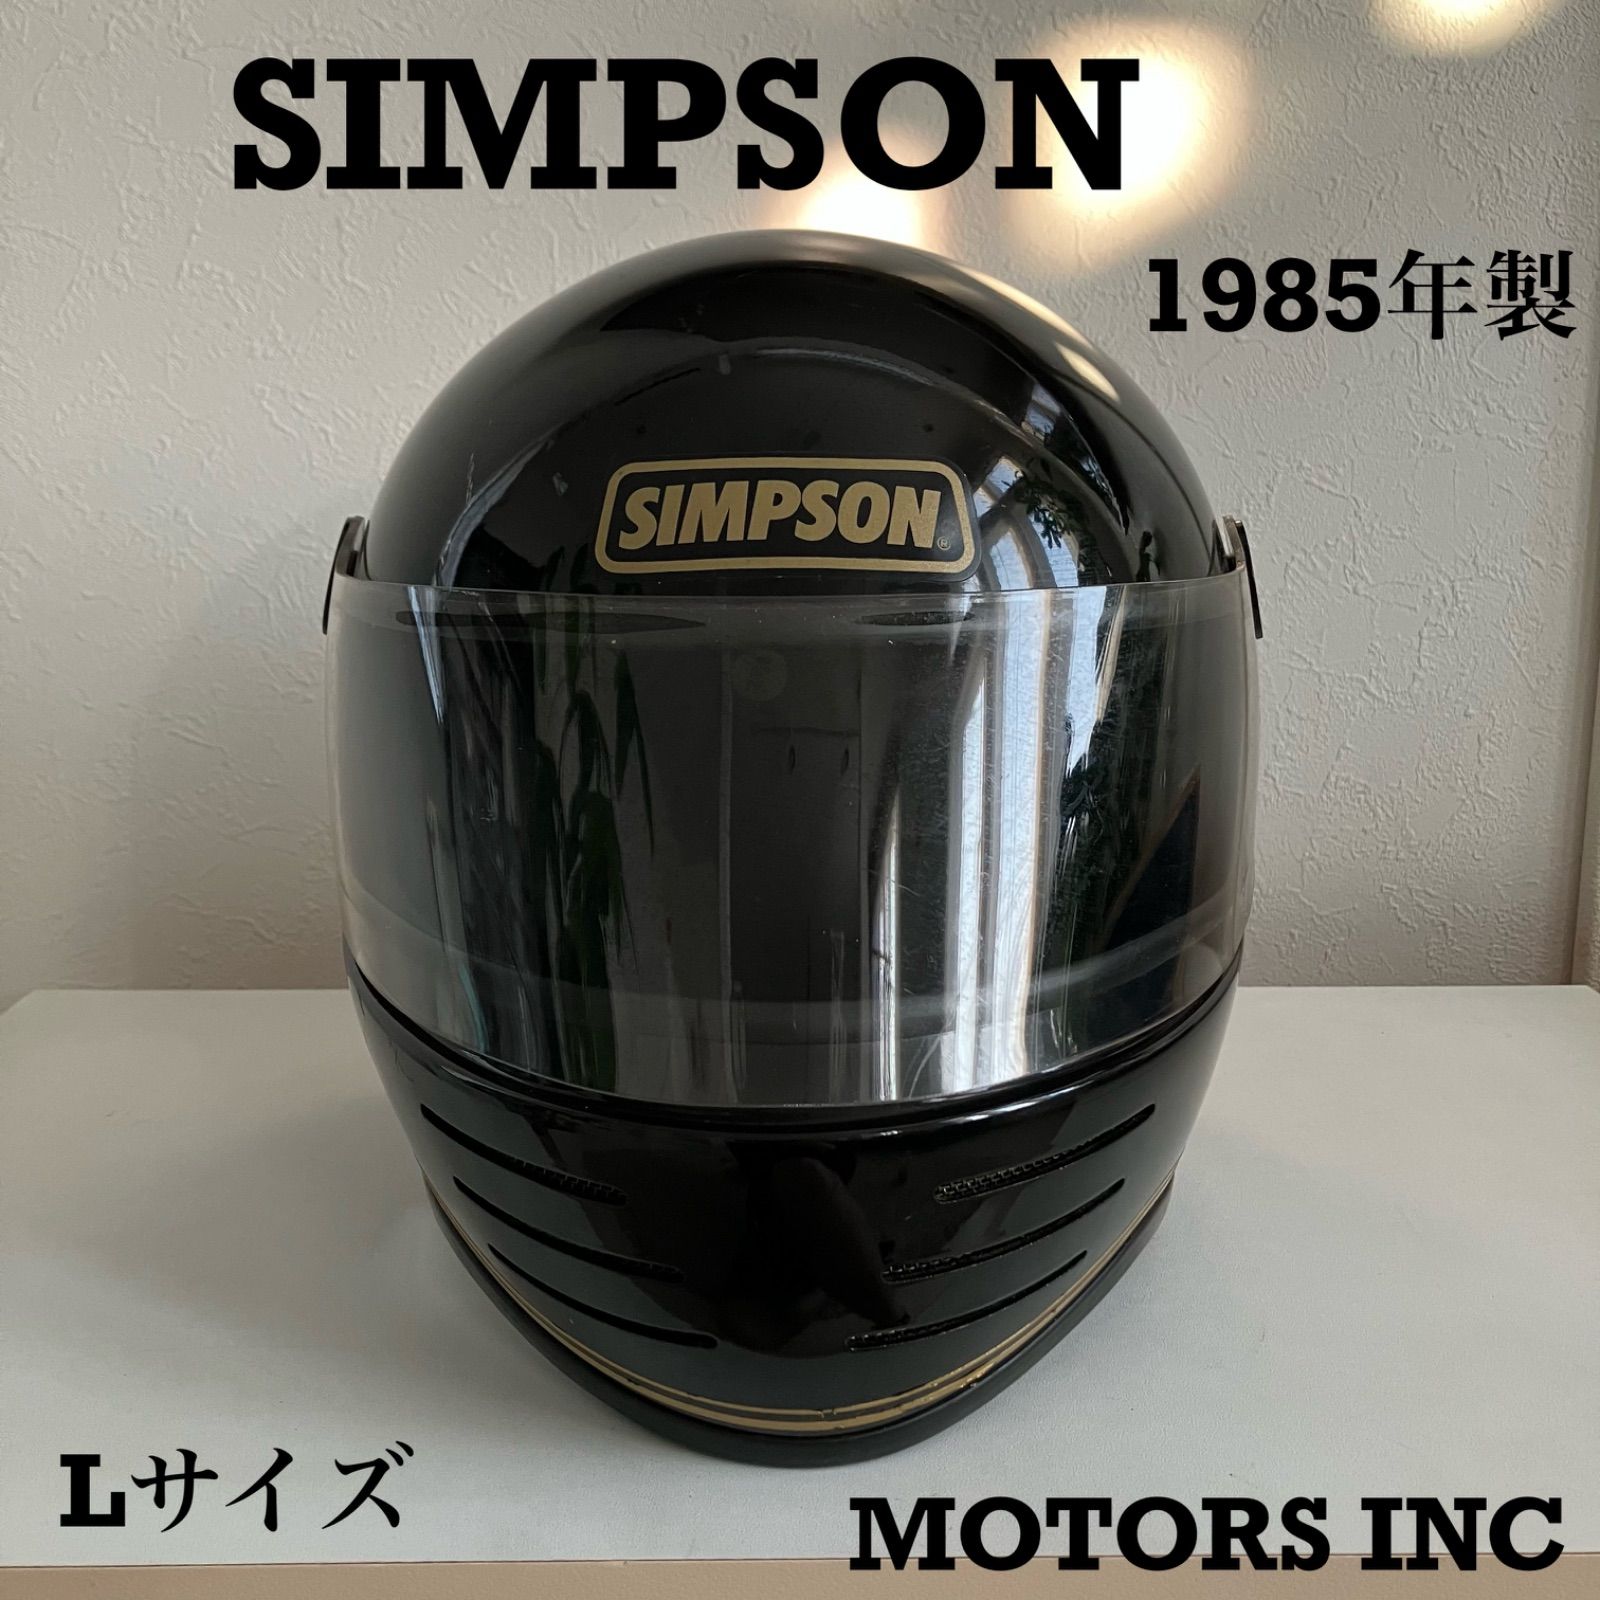 ご質問有難うございますSINPSON1980s M62ヘルメット - dinvenio.com.ar